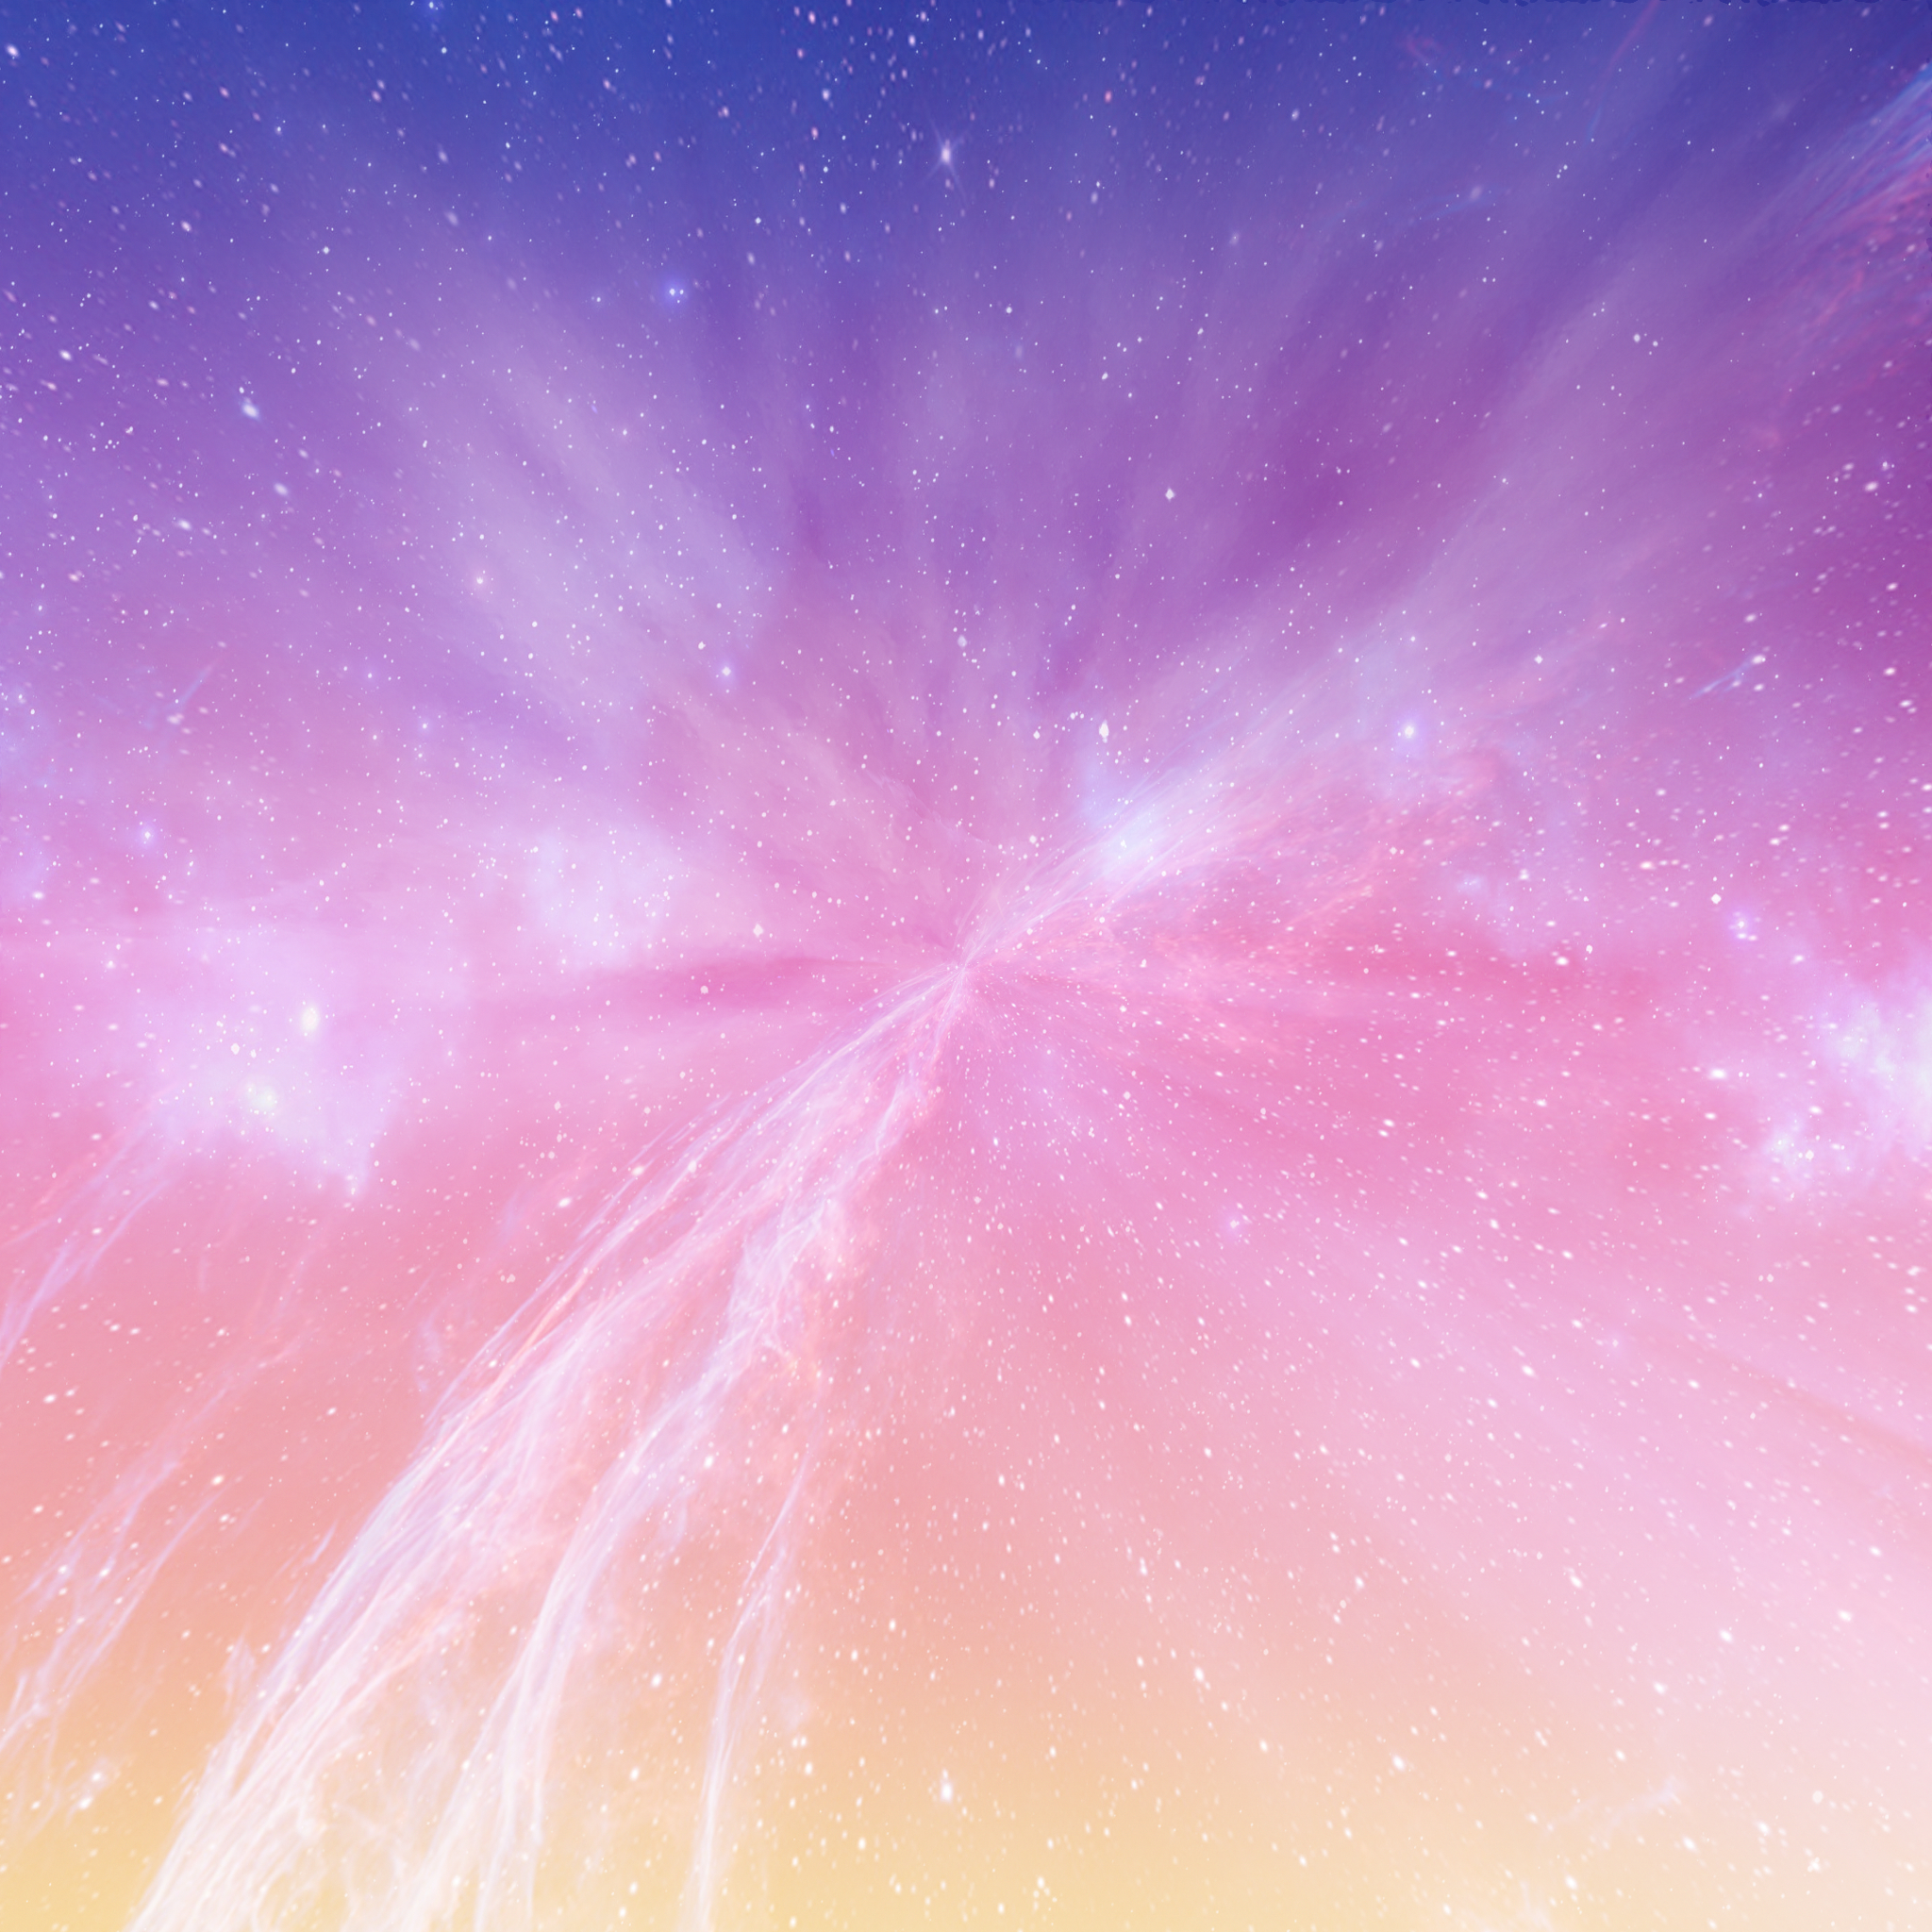 galaxy wallpaper,sky,pink,atmosphere,purple,space